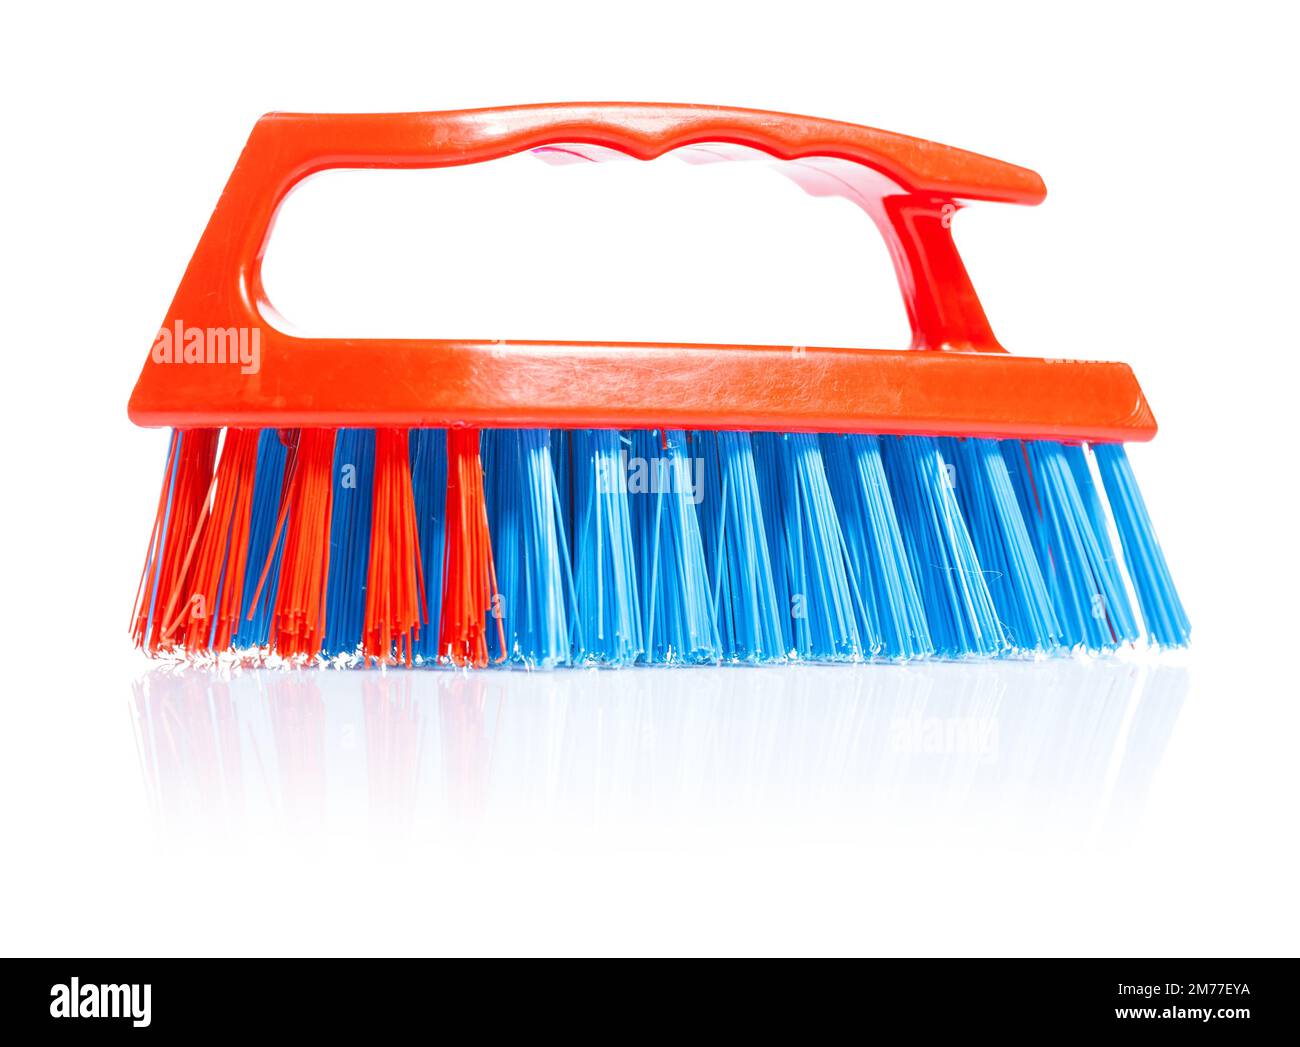 scrub brush Stock Photo